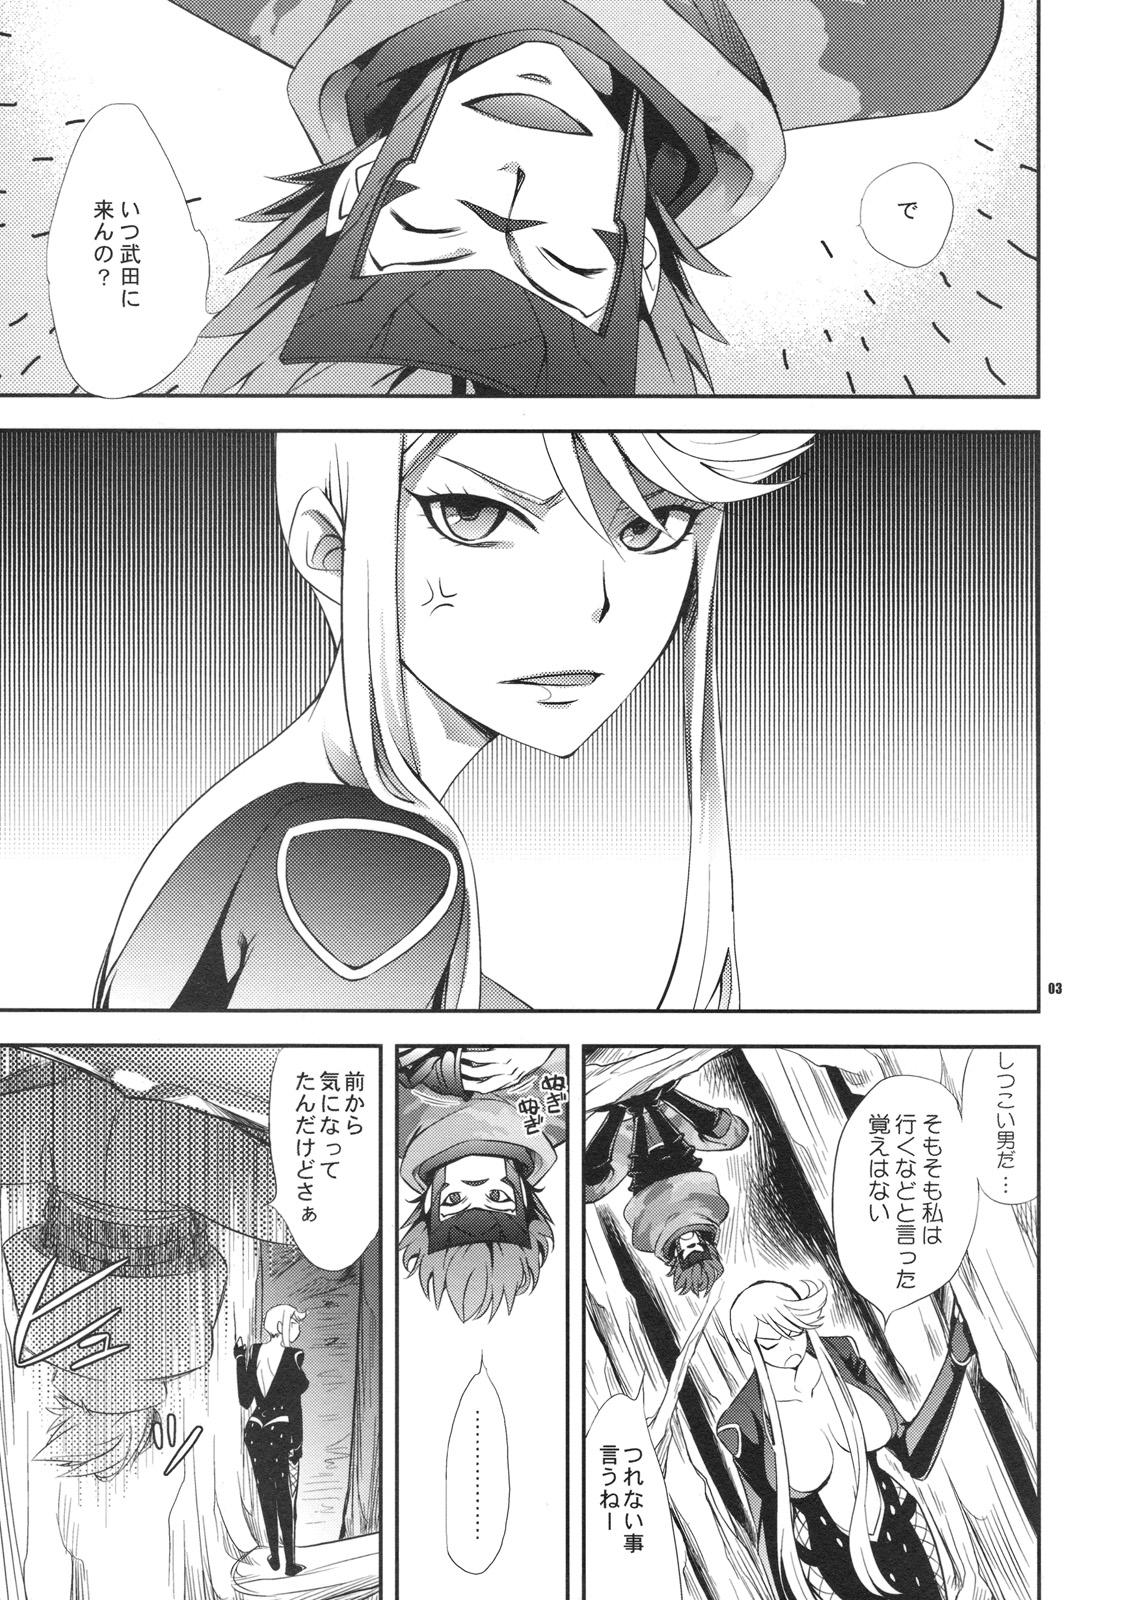 Tats Oosame Kudasai Kenshin-sama! - Sengoku basara Stranger - Page 2